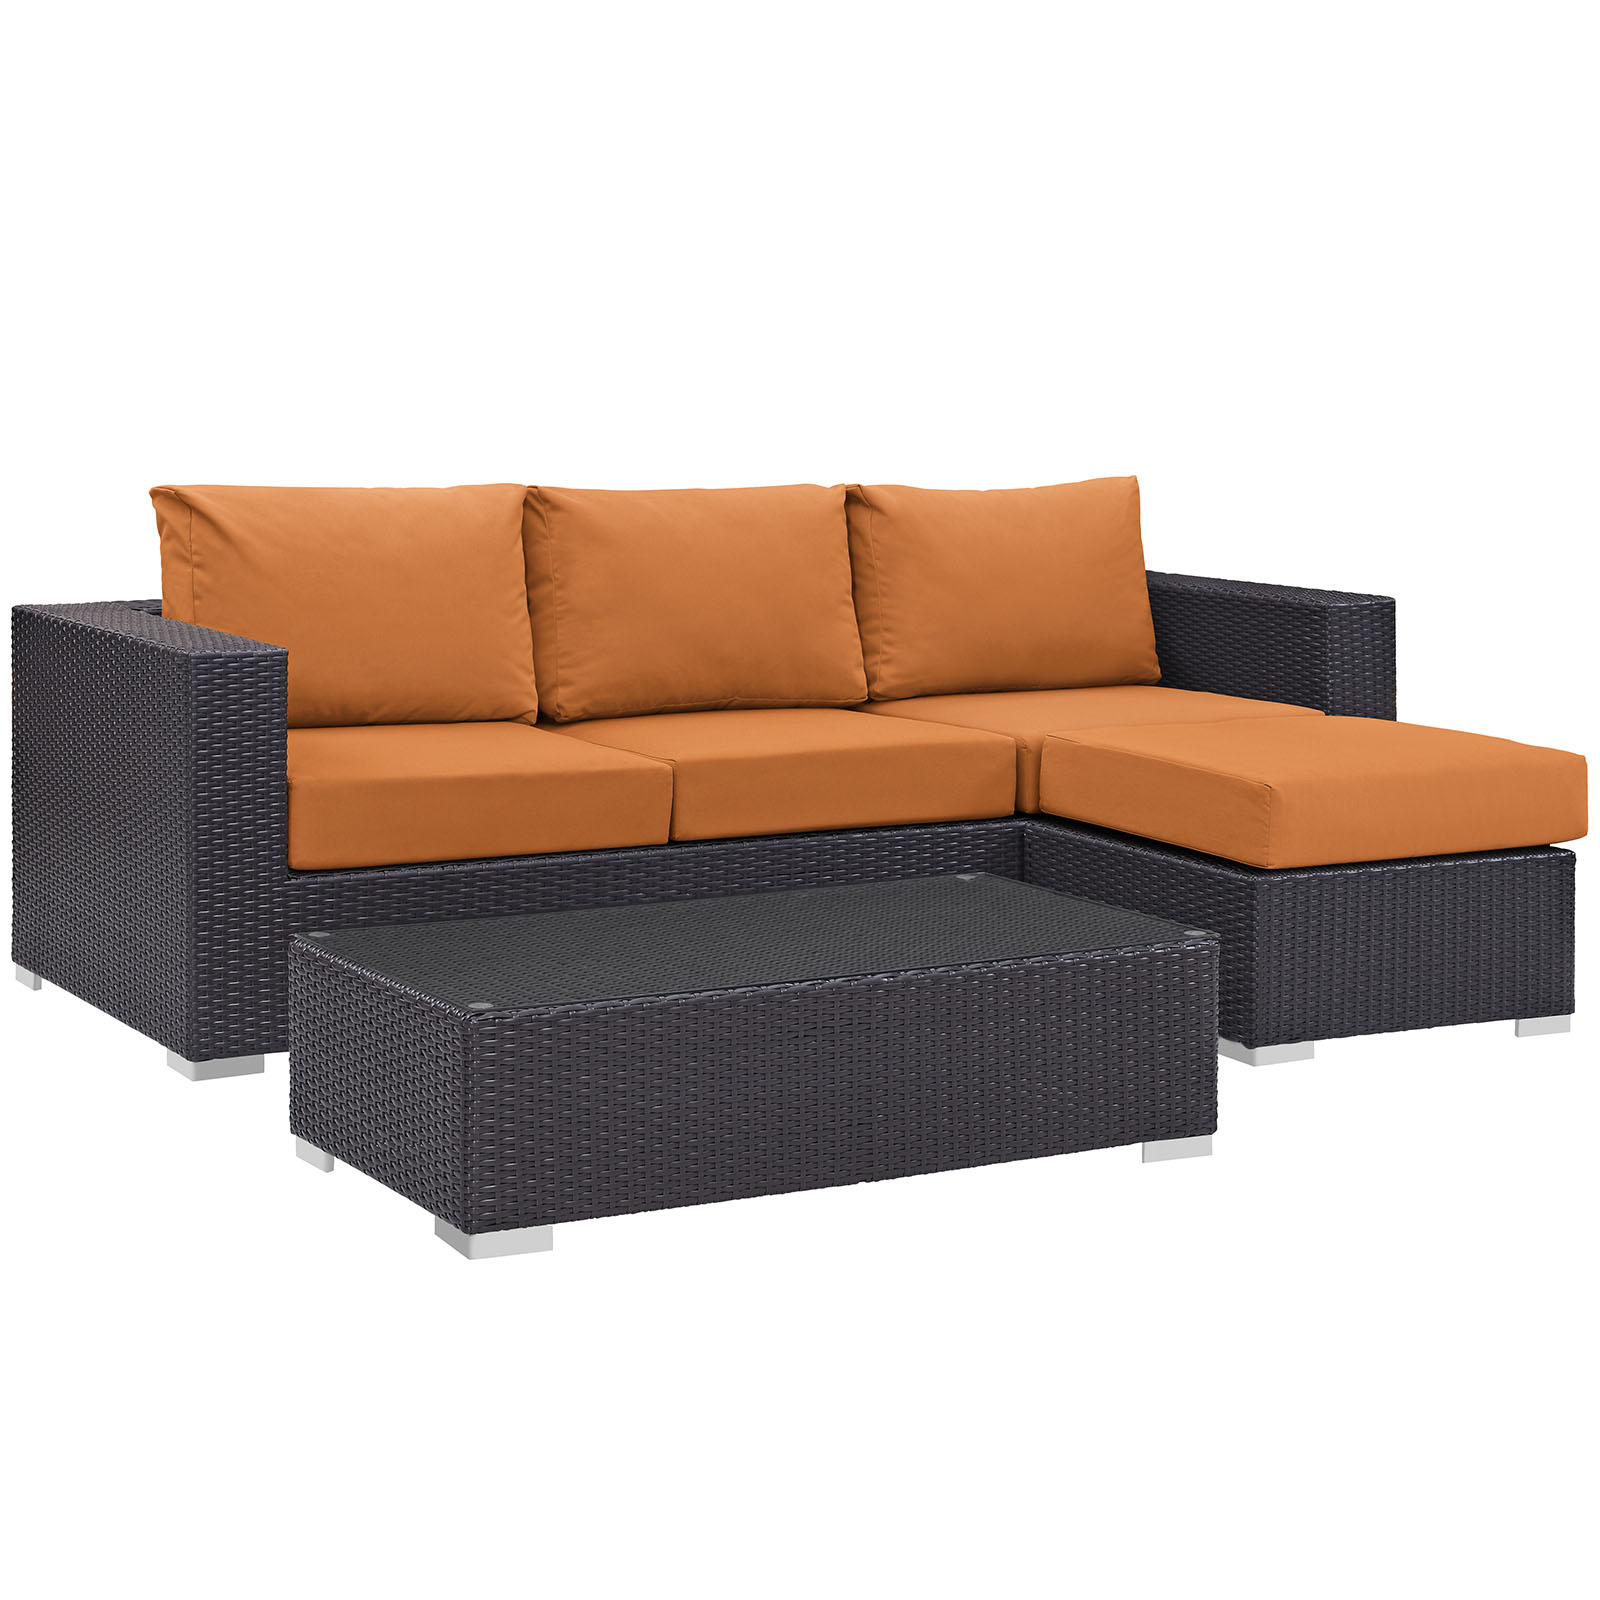 Modway Convene 3 Piece Outdoor Patio Sofa Set in Espresso Orange - image 2 of 7